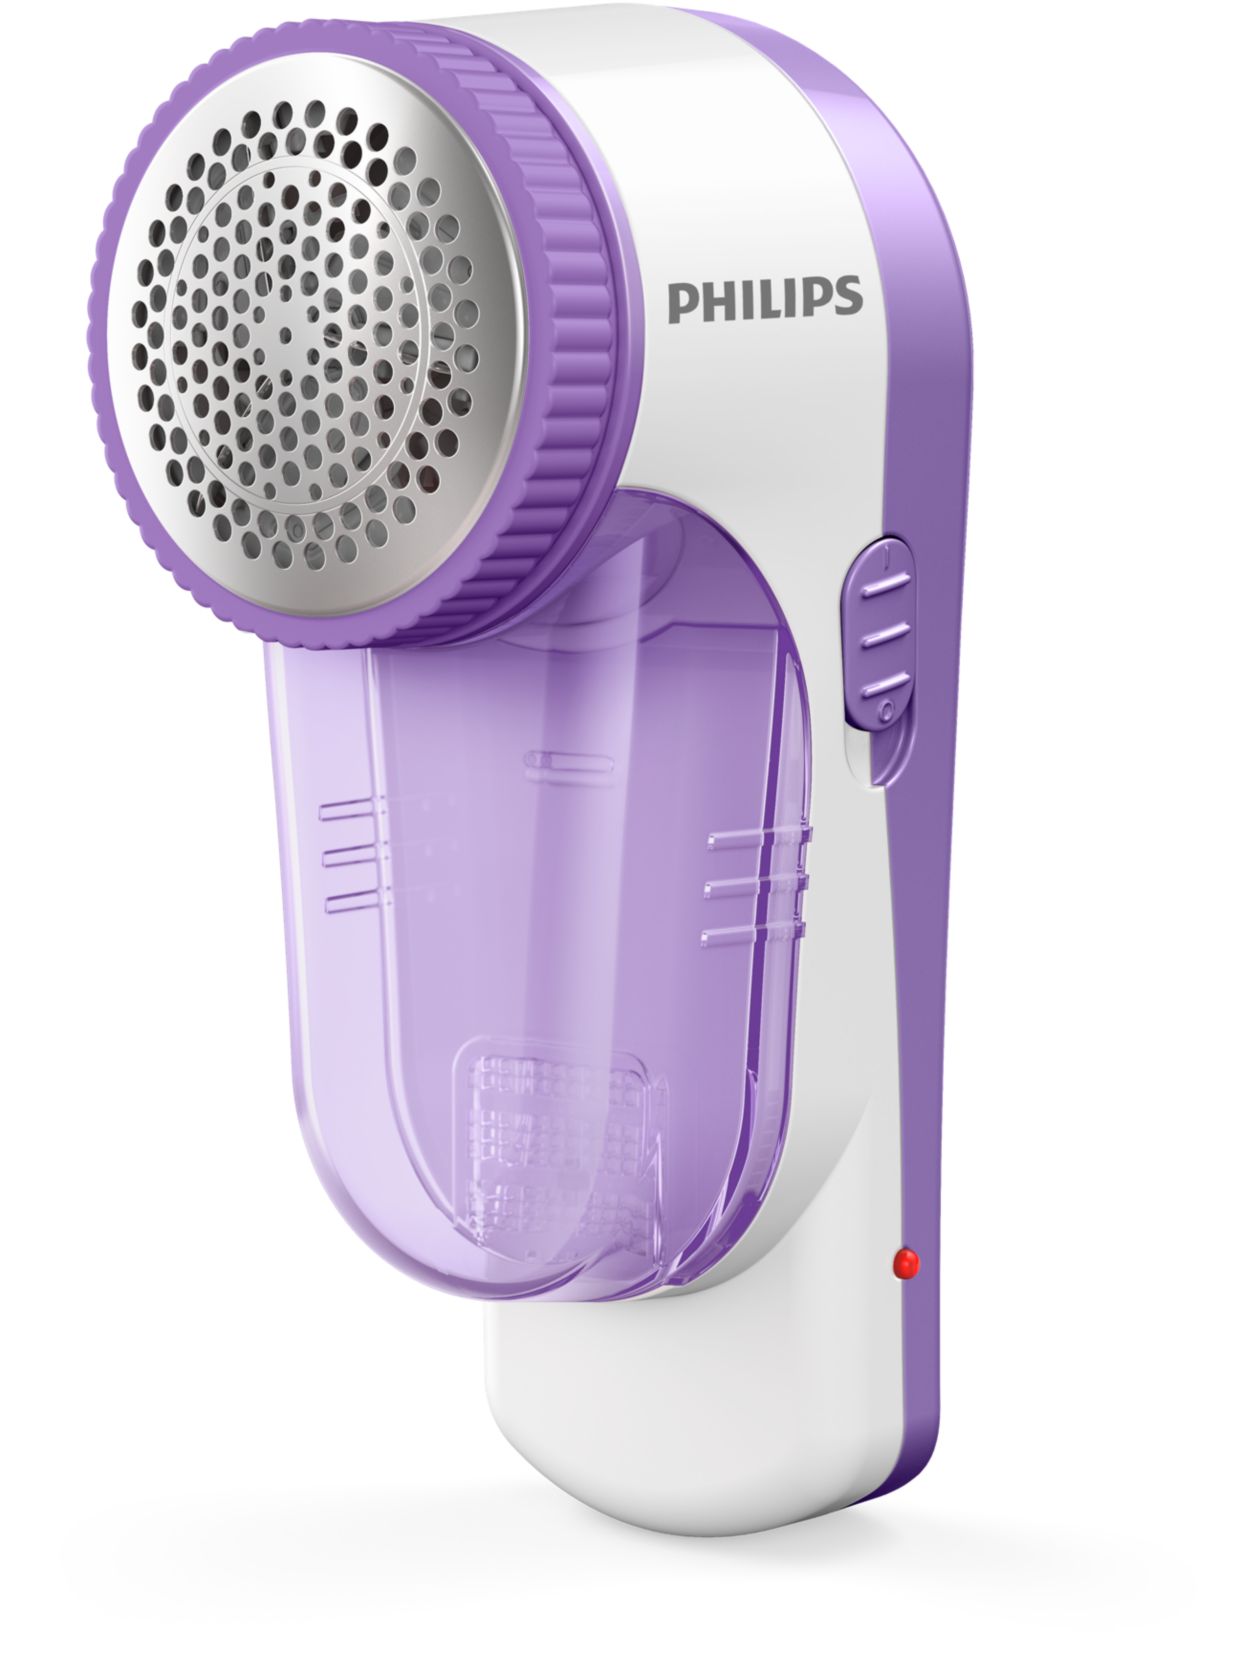 Le rasoir anti-bouloches Philips qui redonne vie aux vêtements